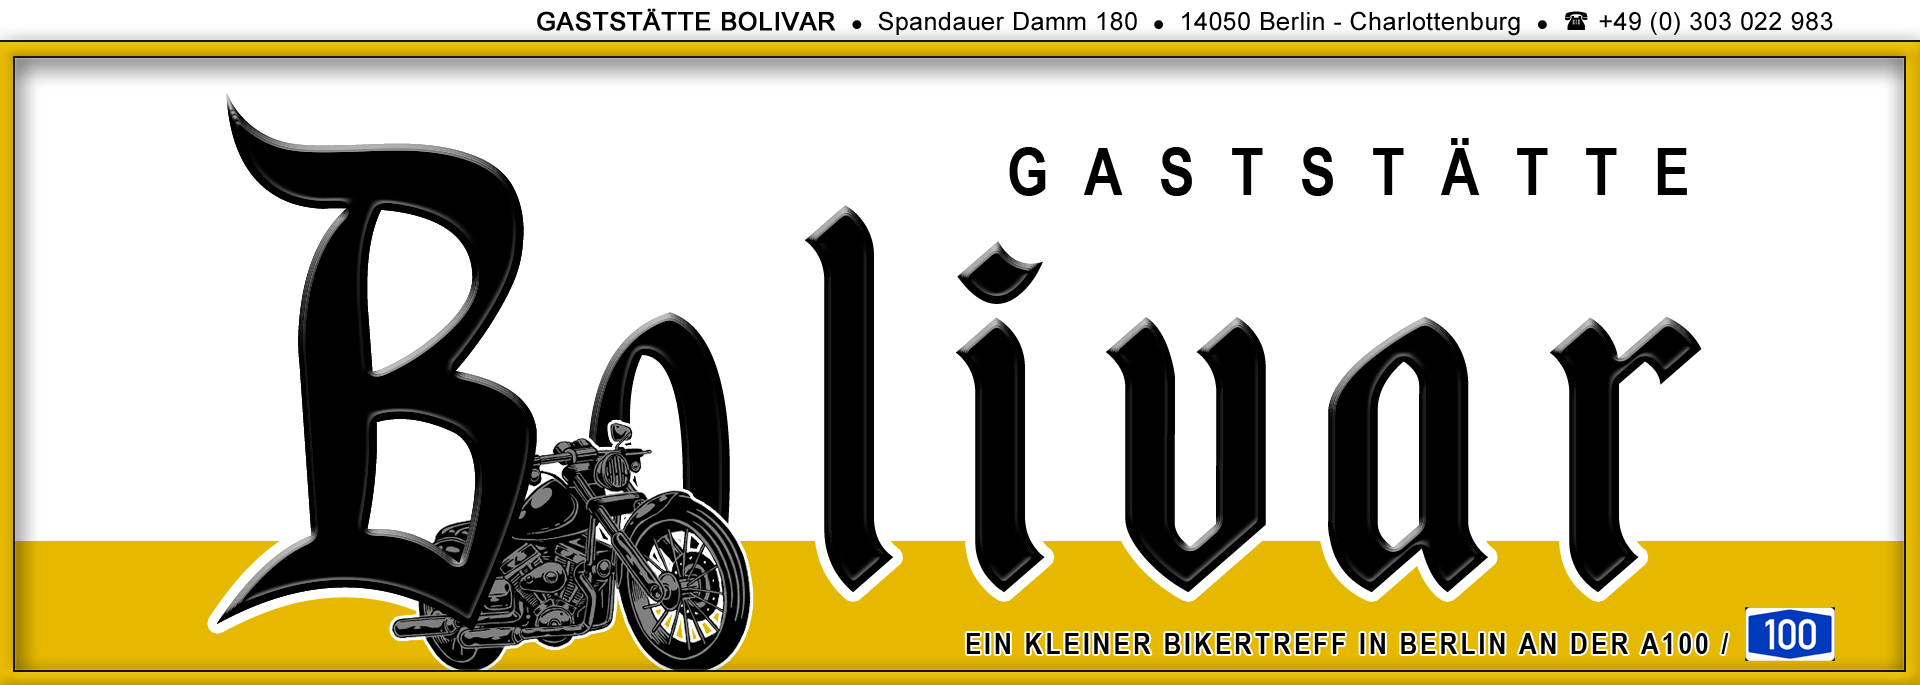 Biker Treff Bolivar in Berlin, für die Bikerin und den Biker